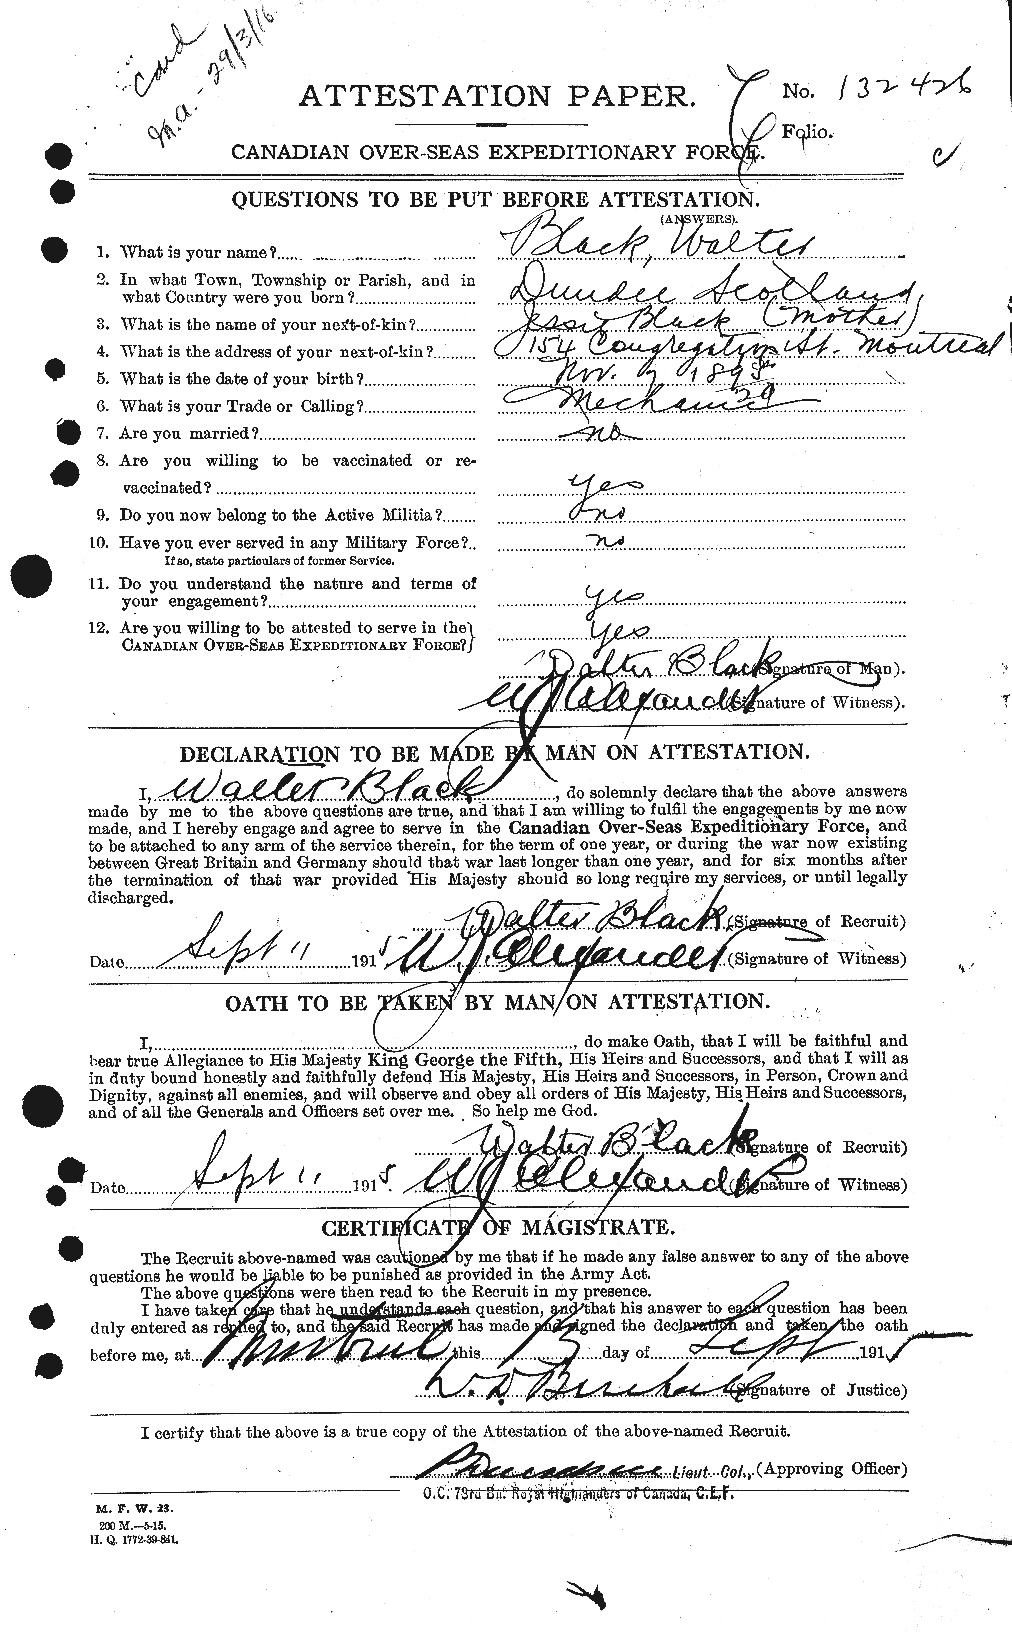 Dossiers du Personnel de la Première Guerre mondiale - CEC 247642a